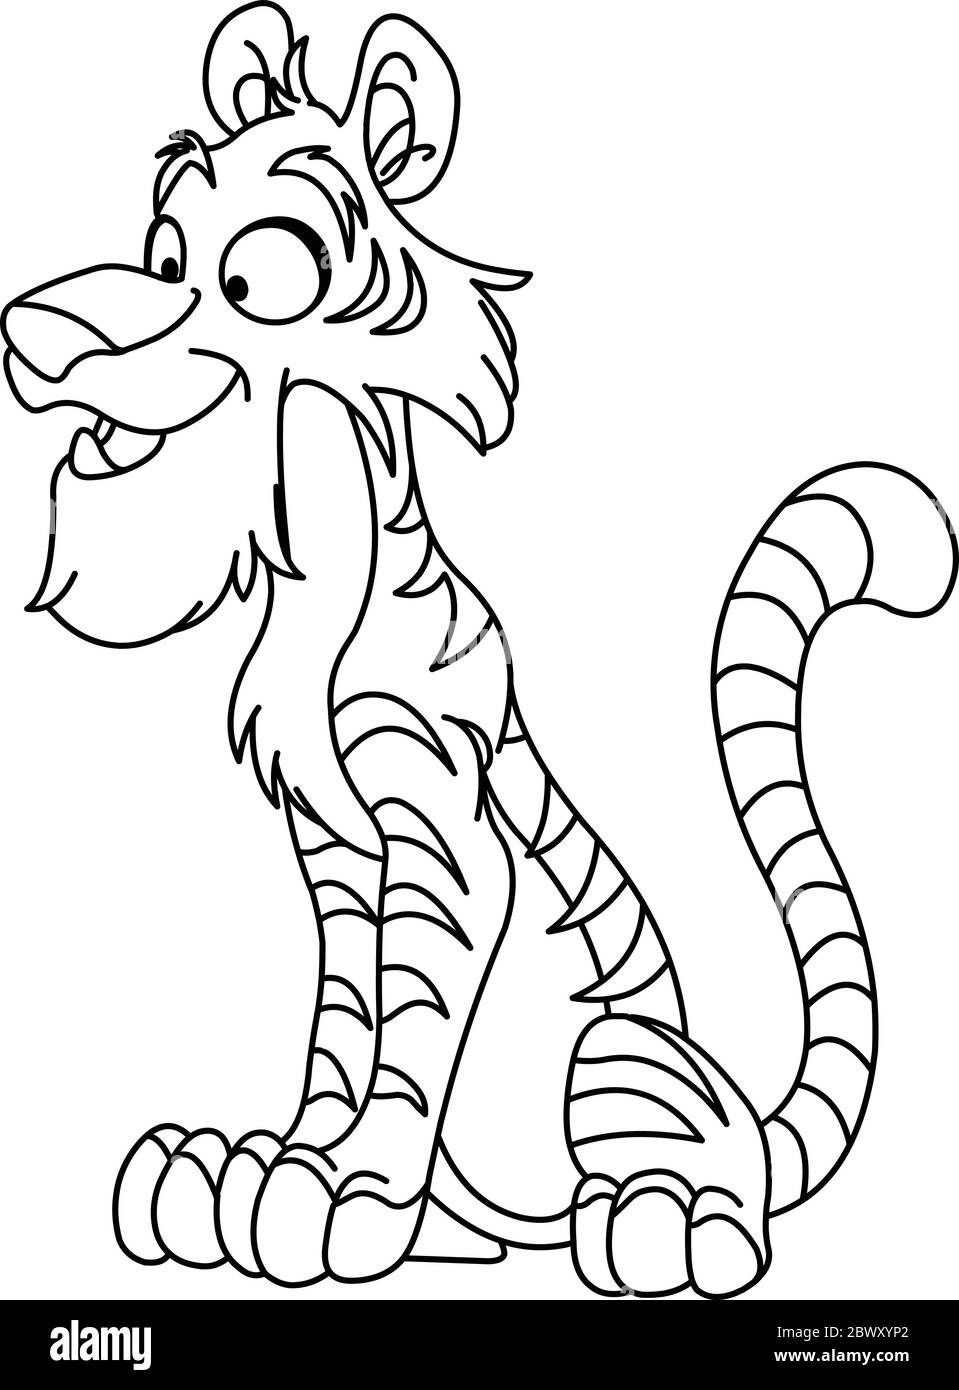 Jeune tigre souligné. Page de coloriage d'illustration d'illustration d'illustration vectorielle. Illustration de Vecteur